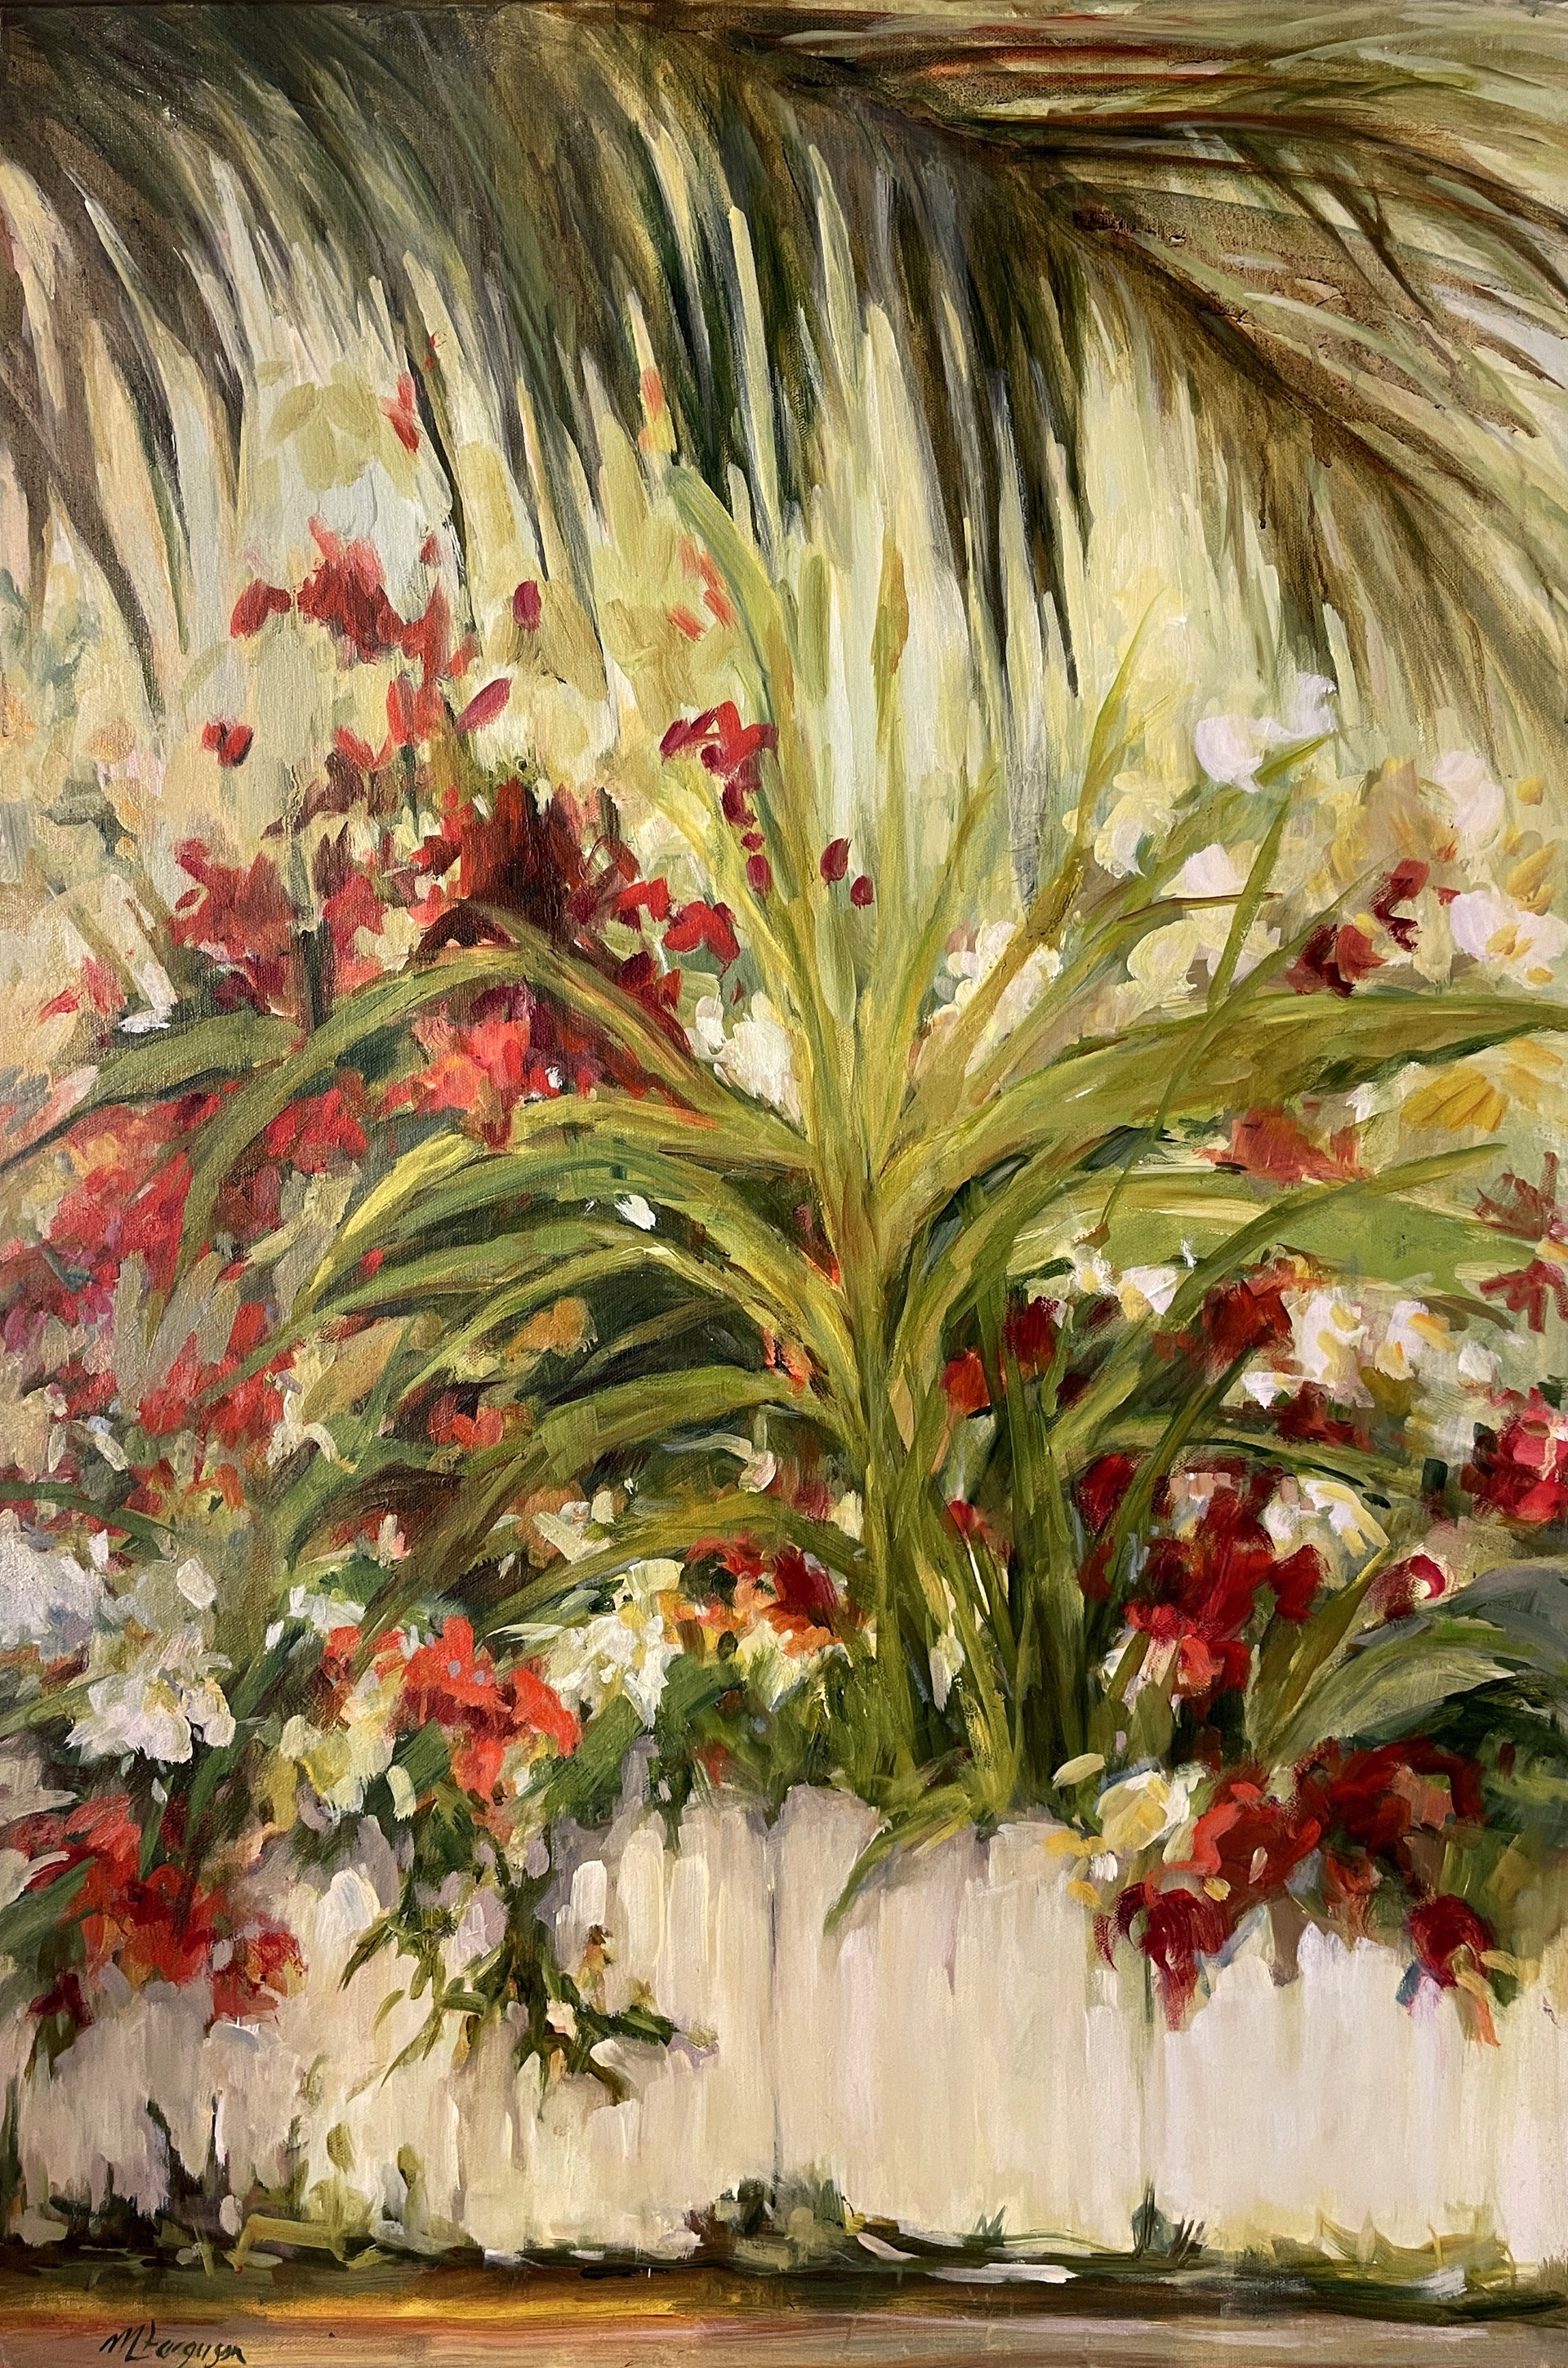 Under The Palms II by Martha Ferguson